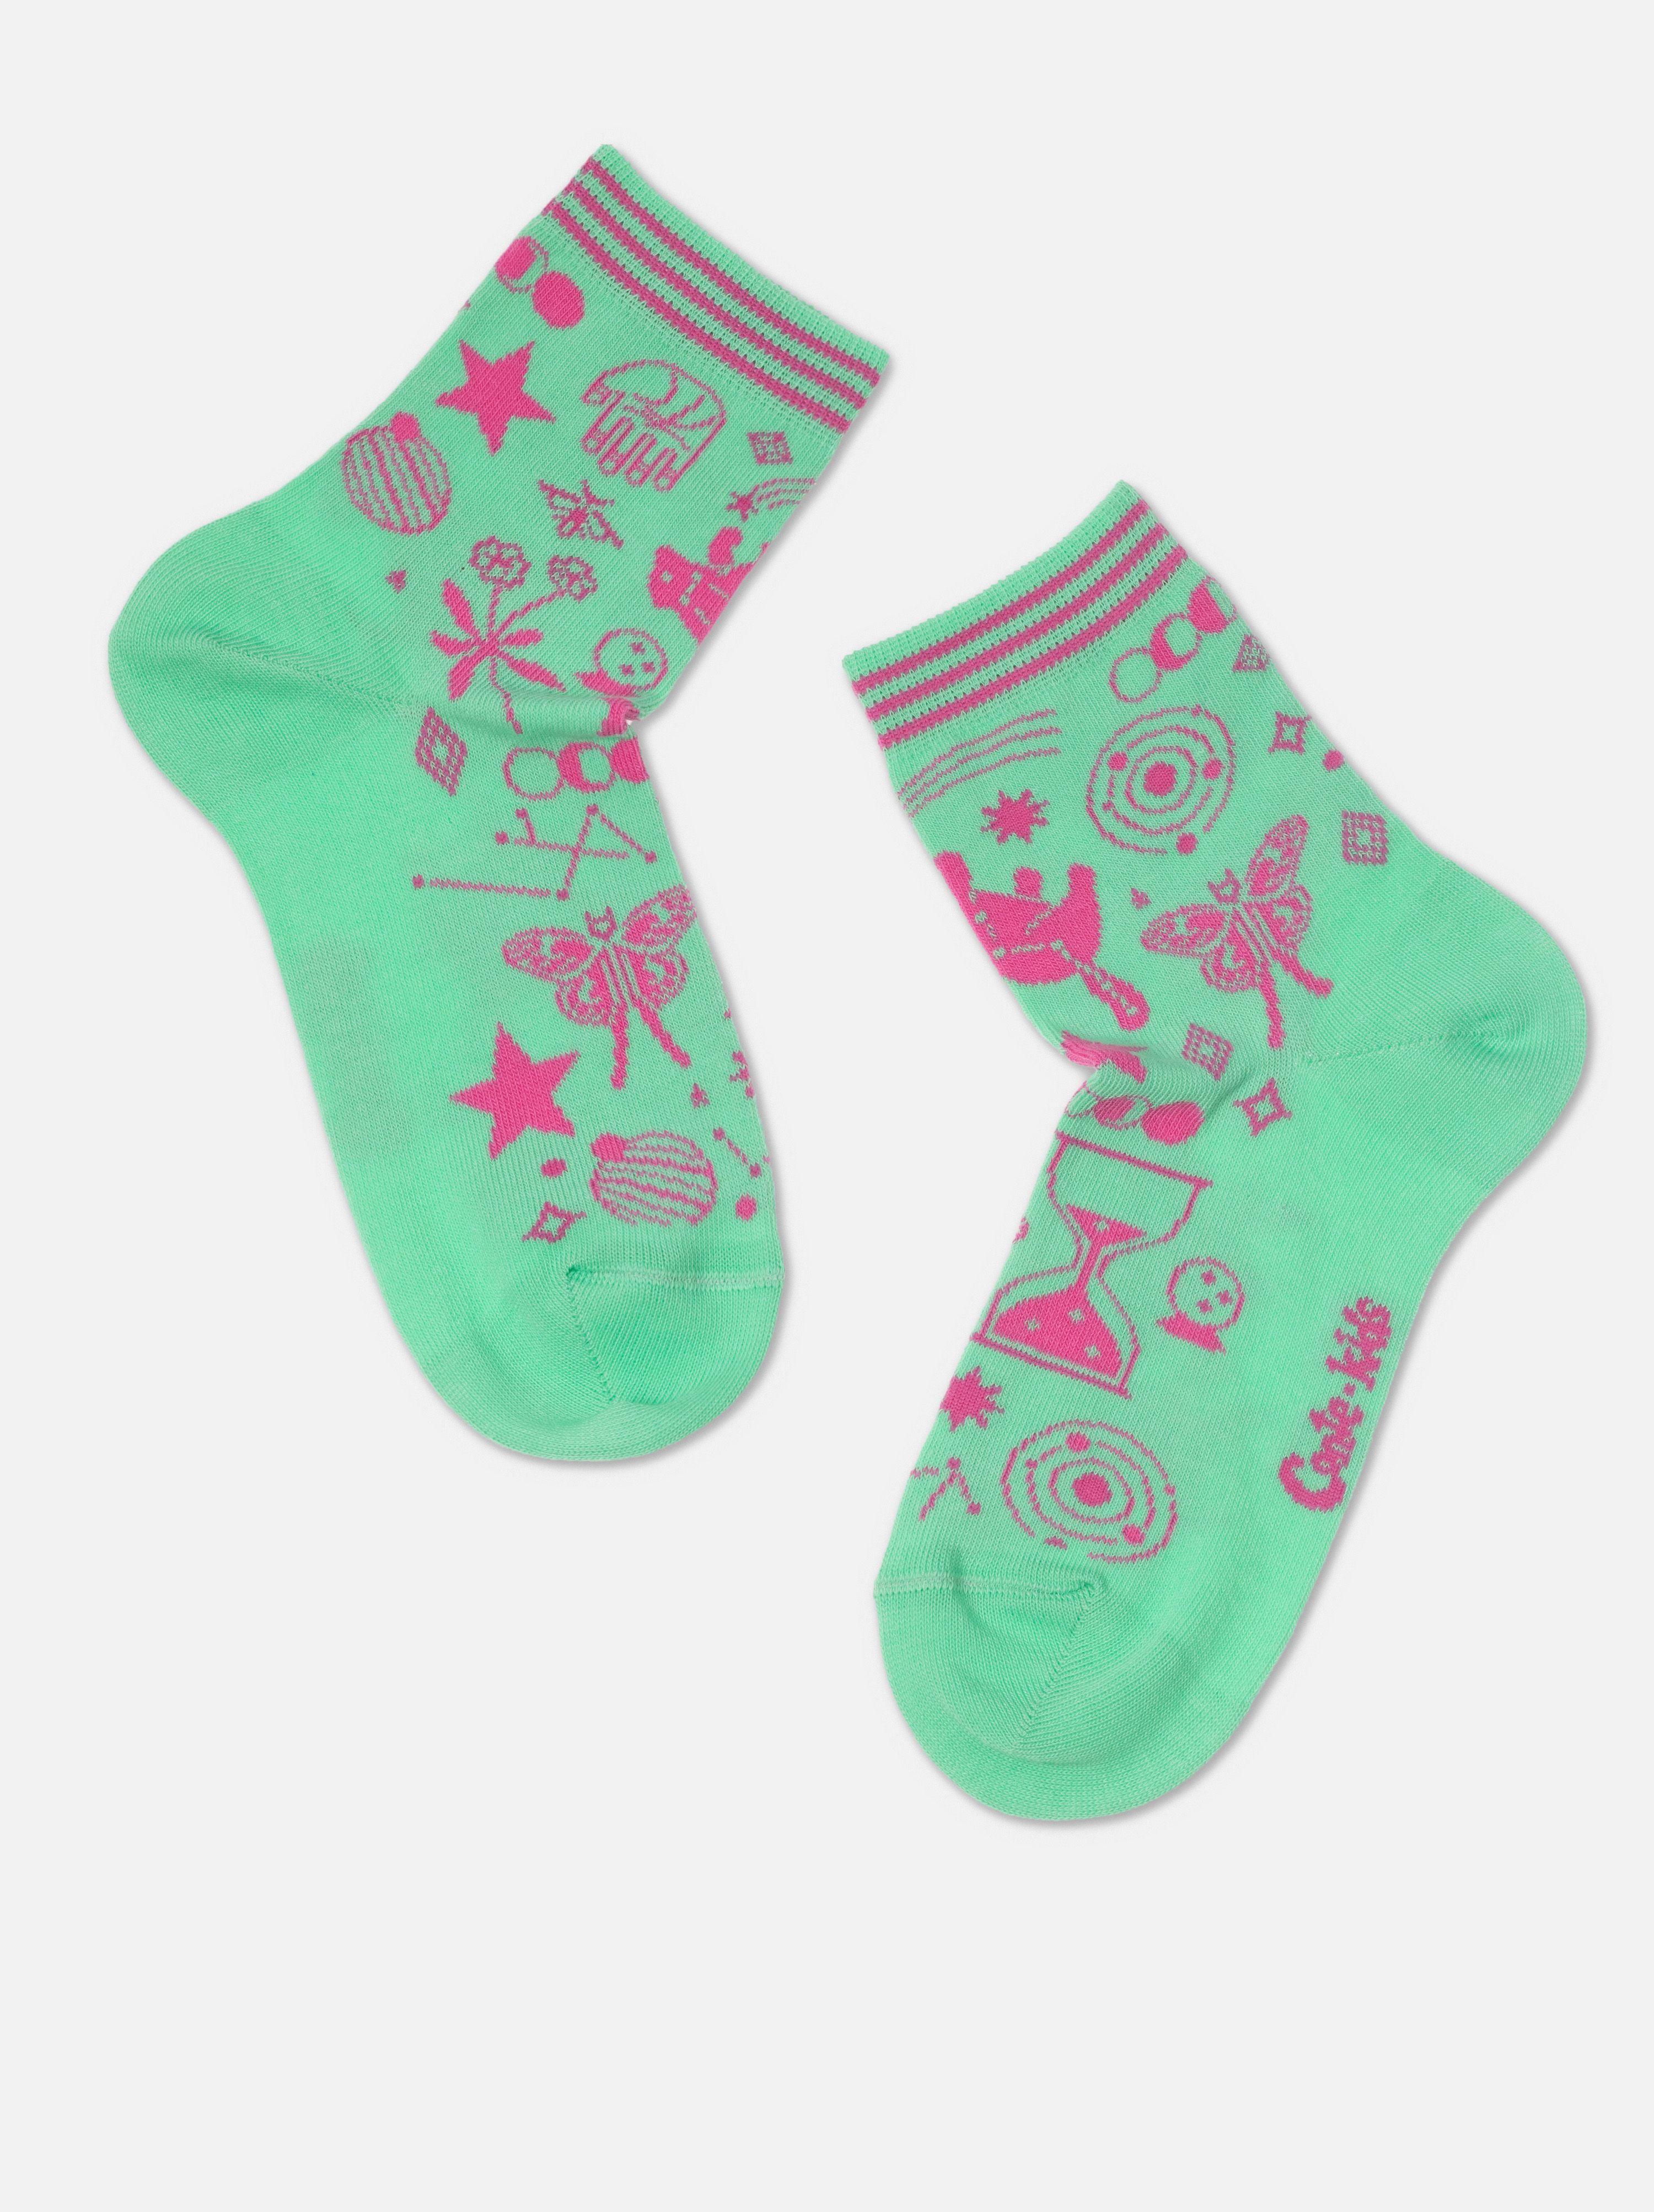 Хлопковые носки с рисунками «Symbol» Conte ⭐️, цвет персиковый, размер 20